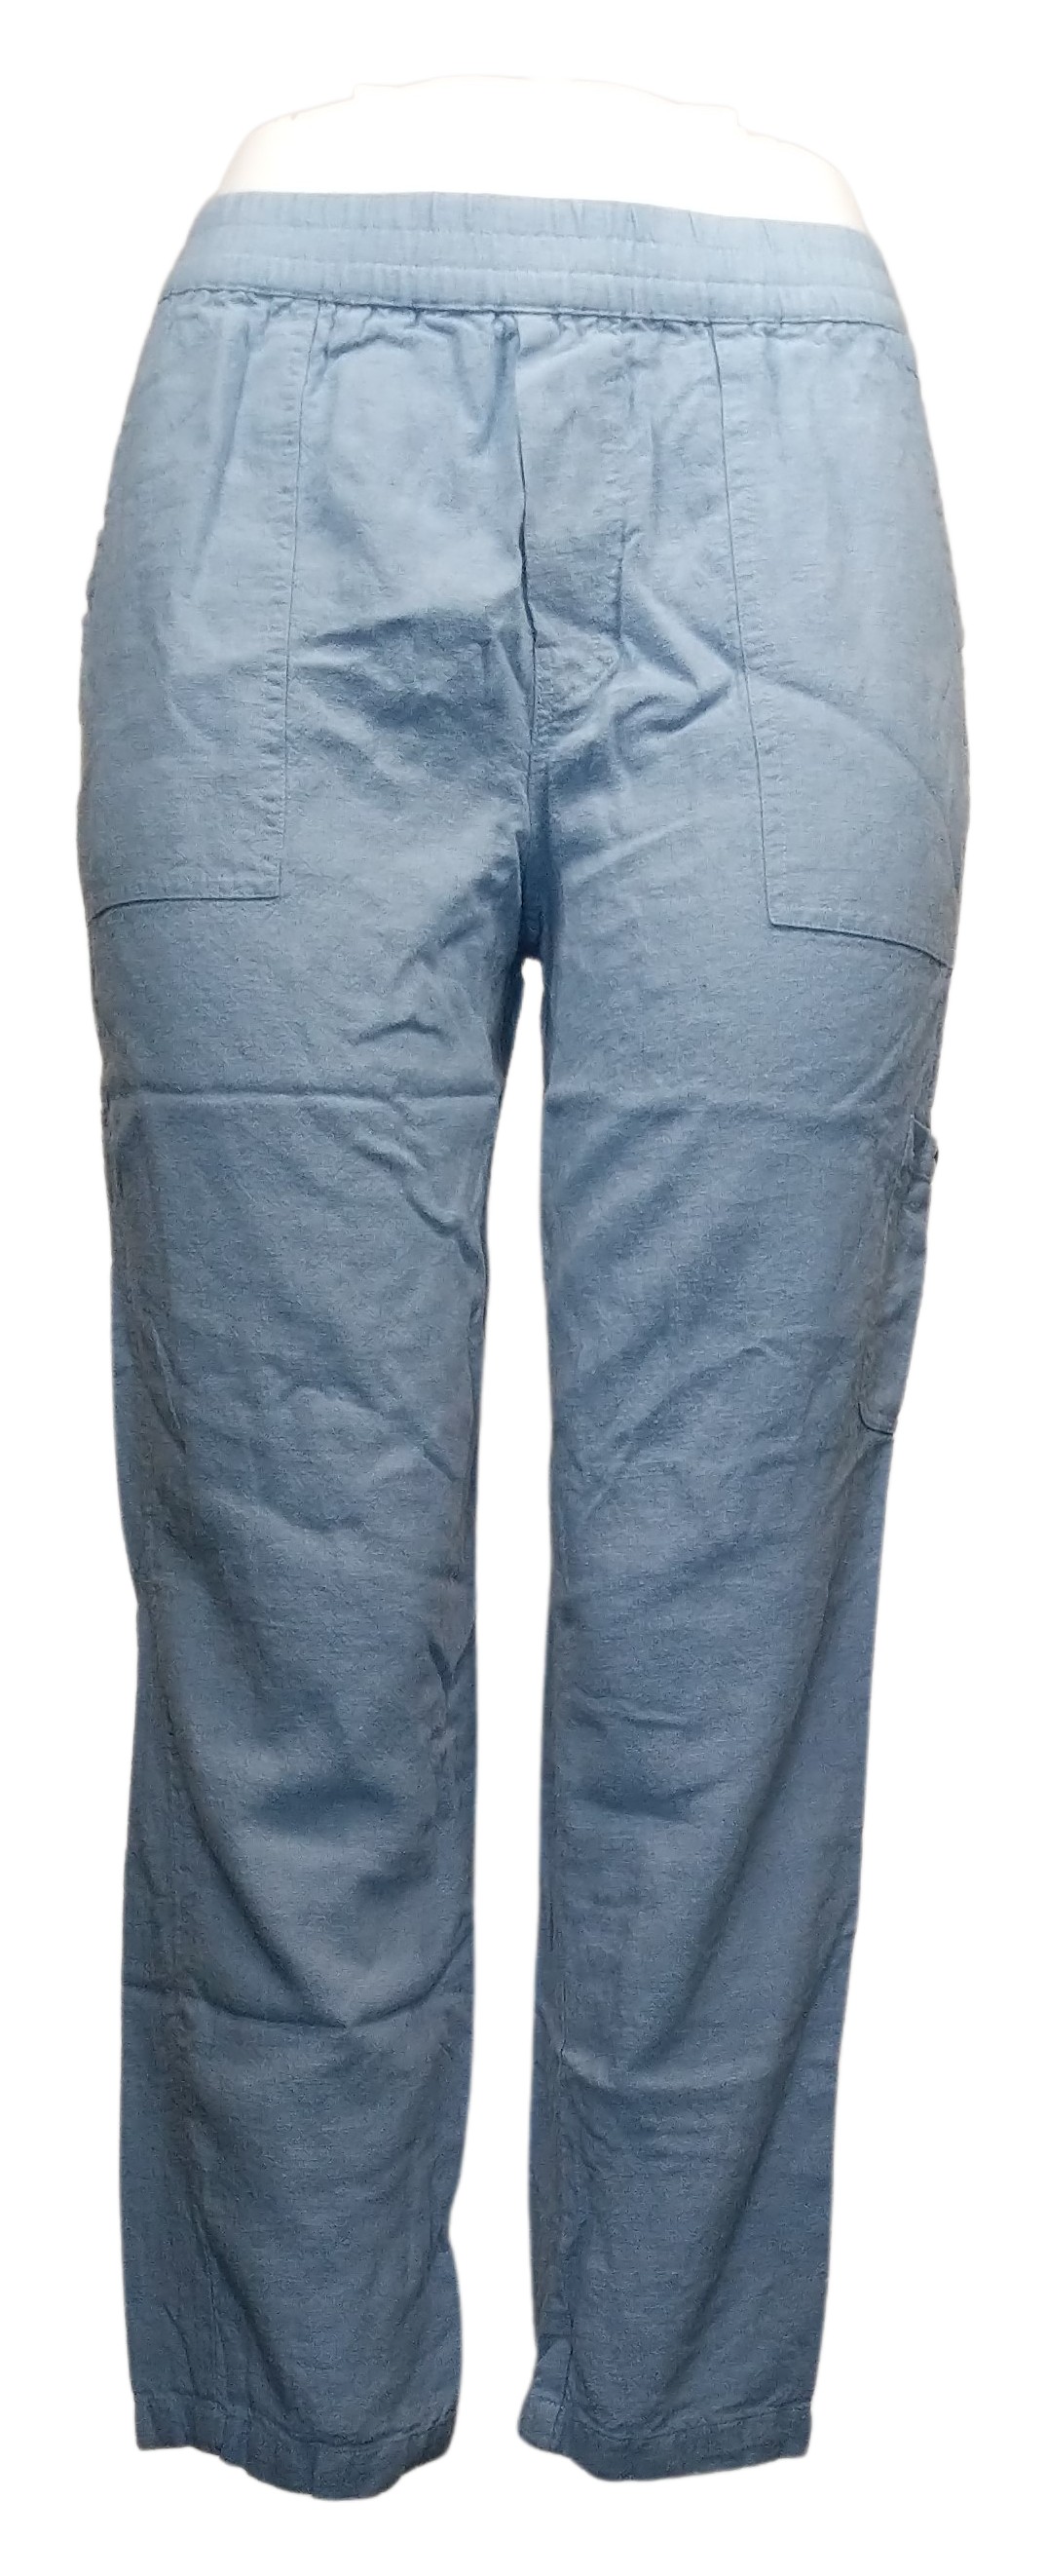 Susan Graver Tall Pure Easy Linen Utility Crop Pant Women's Pants Sz S Blue